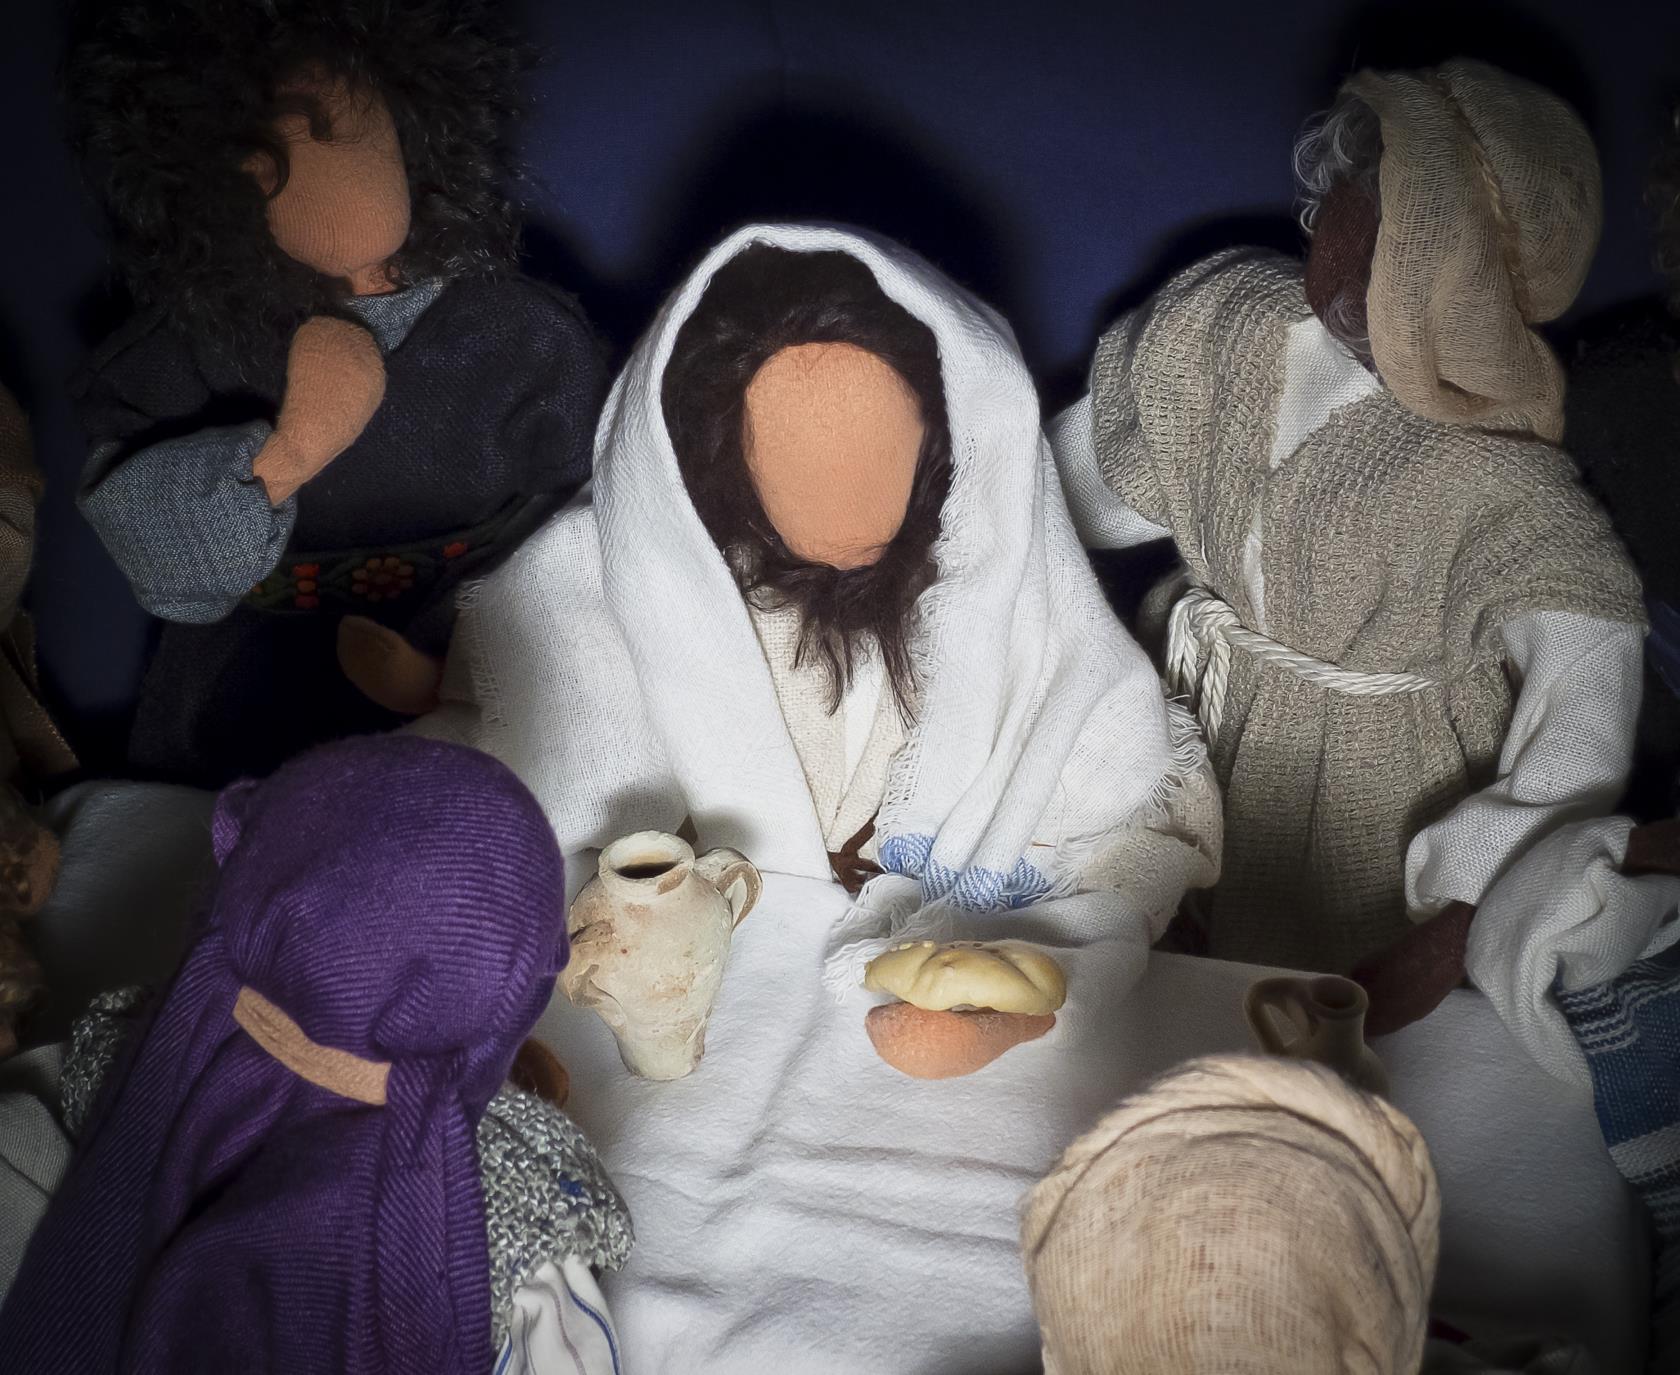 Sydda dockor som föreställer Jesus under nattvarden.